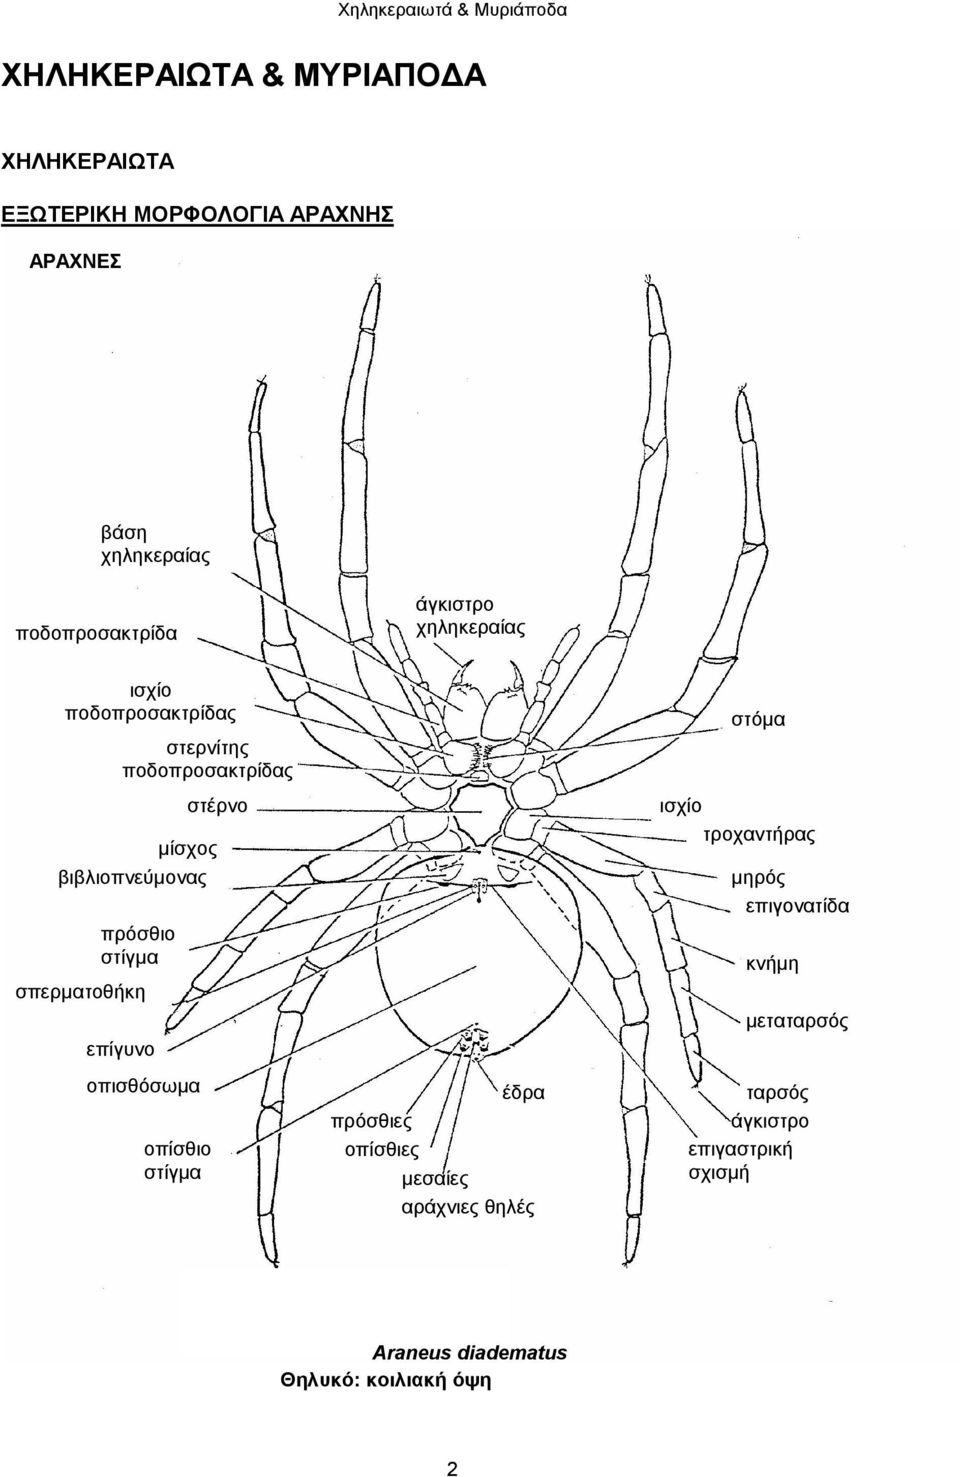 σπερματοθήκη επίγυνο οπισθόσωμα οπίσθιο στίγμα στέρνο έδρα πρόσθιες οπίσθιες μεσαίες αράχνιες θηλές στόμα ισχίο